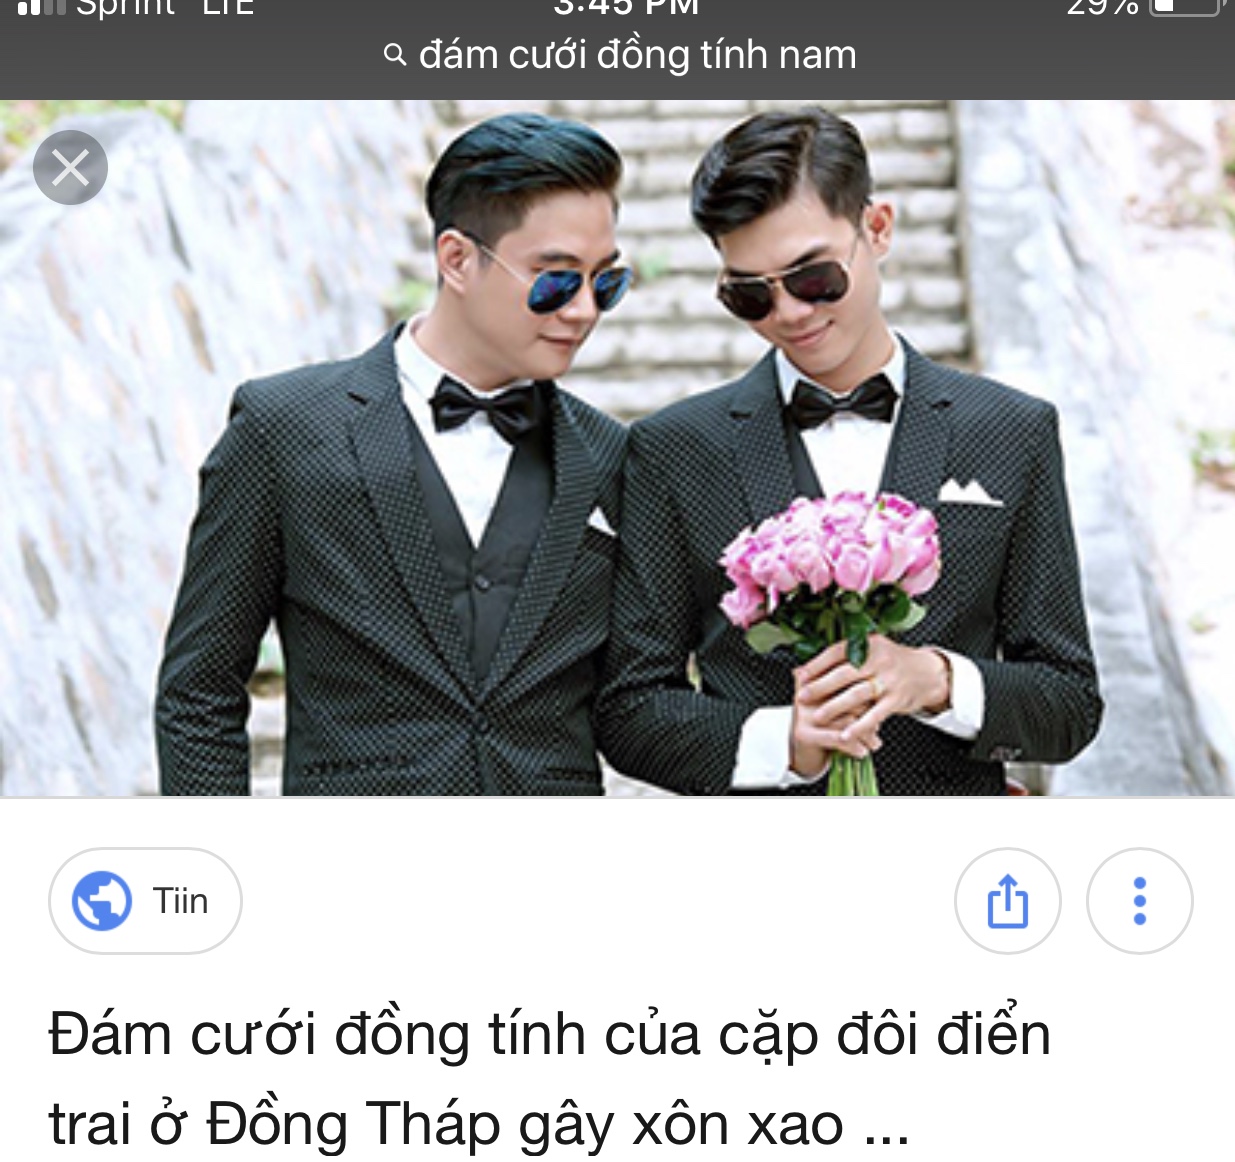 Таиланд однополые браки. Однополые браки в Корее. Однополая свадьба. Однополые браки на Тайване. Однополые пары Япония.